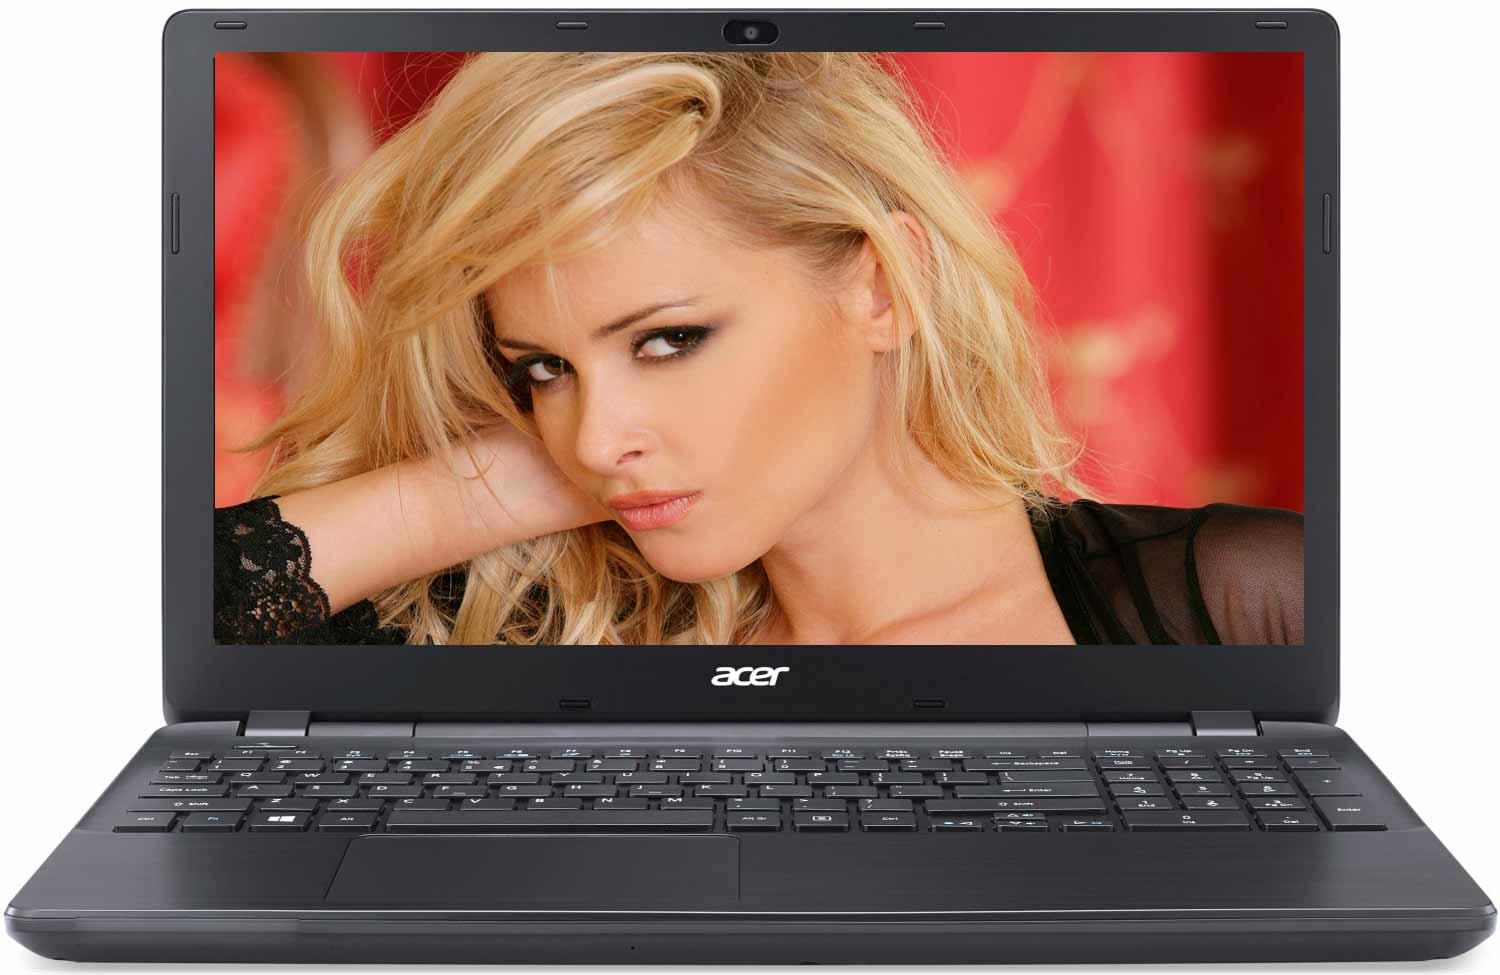   Acer Extensa EX2519-P1J1 (NX.EFAER.064)  1